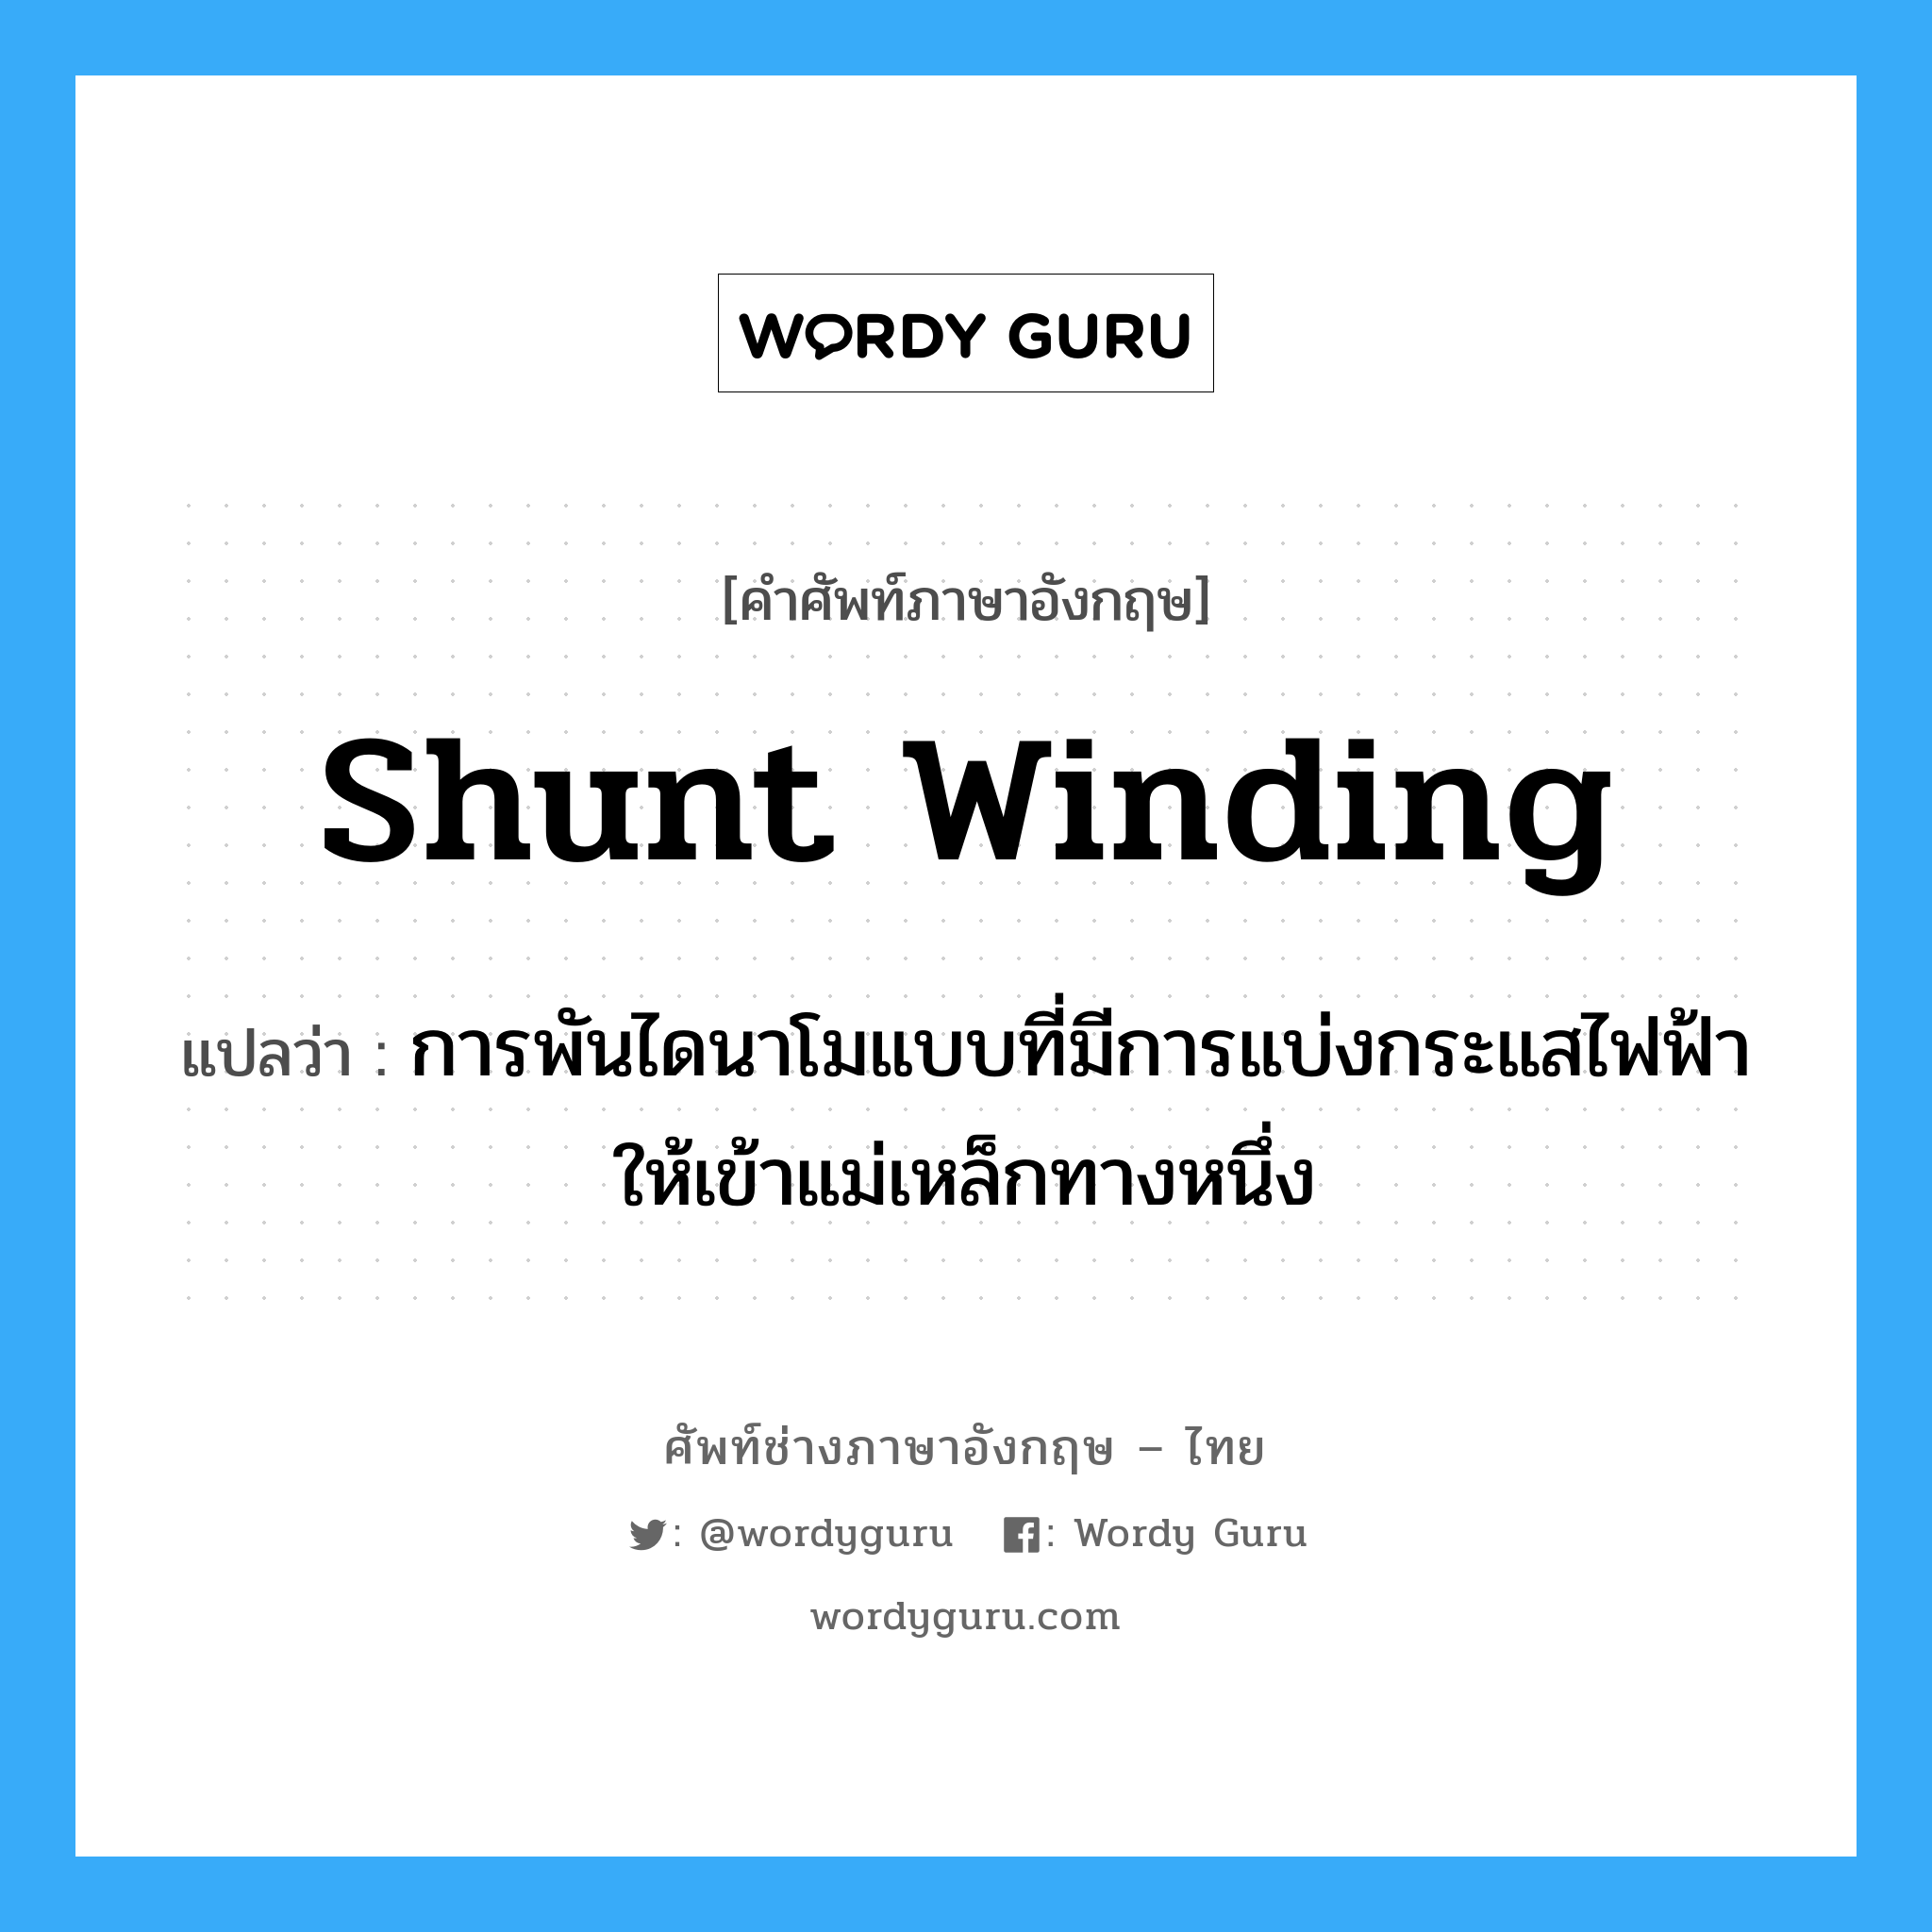 shunt winding แปลว่า?, คำศัพท์ช่างภาษาอังกฤษ - ไทย shunt winding คำศัพท์ภาษาอังกฤษ shunt winding แปลว่า การพันไดนาโมแบบที่มีการแบ่งกระแสไฟฟ้าให้เข้าแม่เหล็กทางหนึ่ง